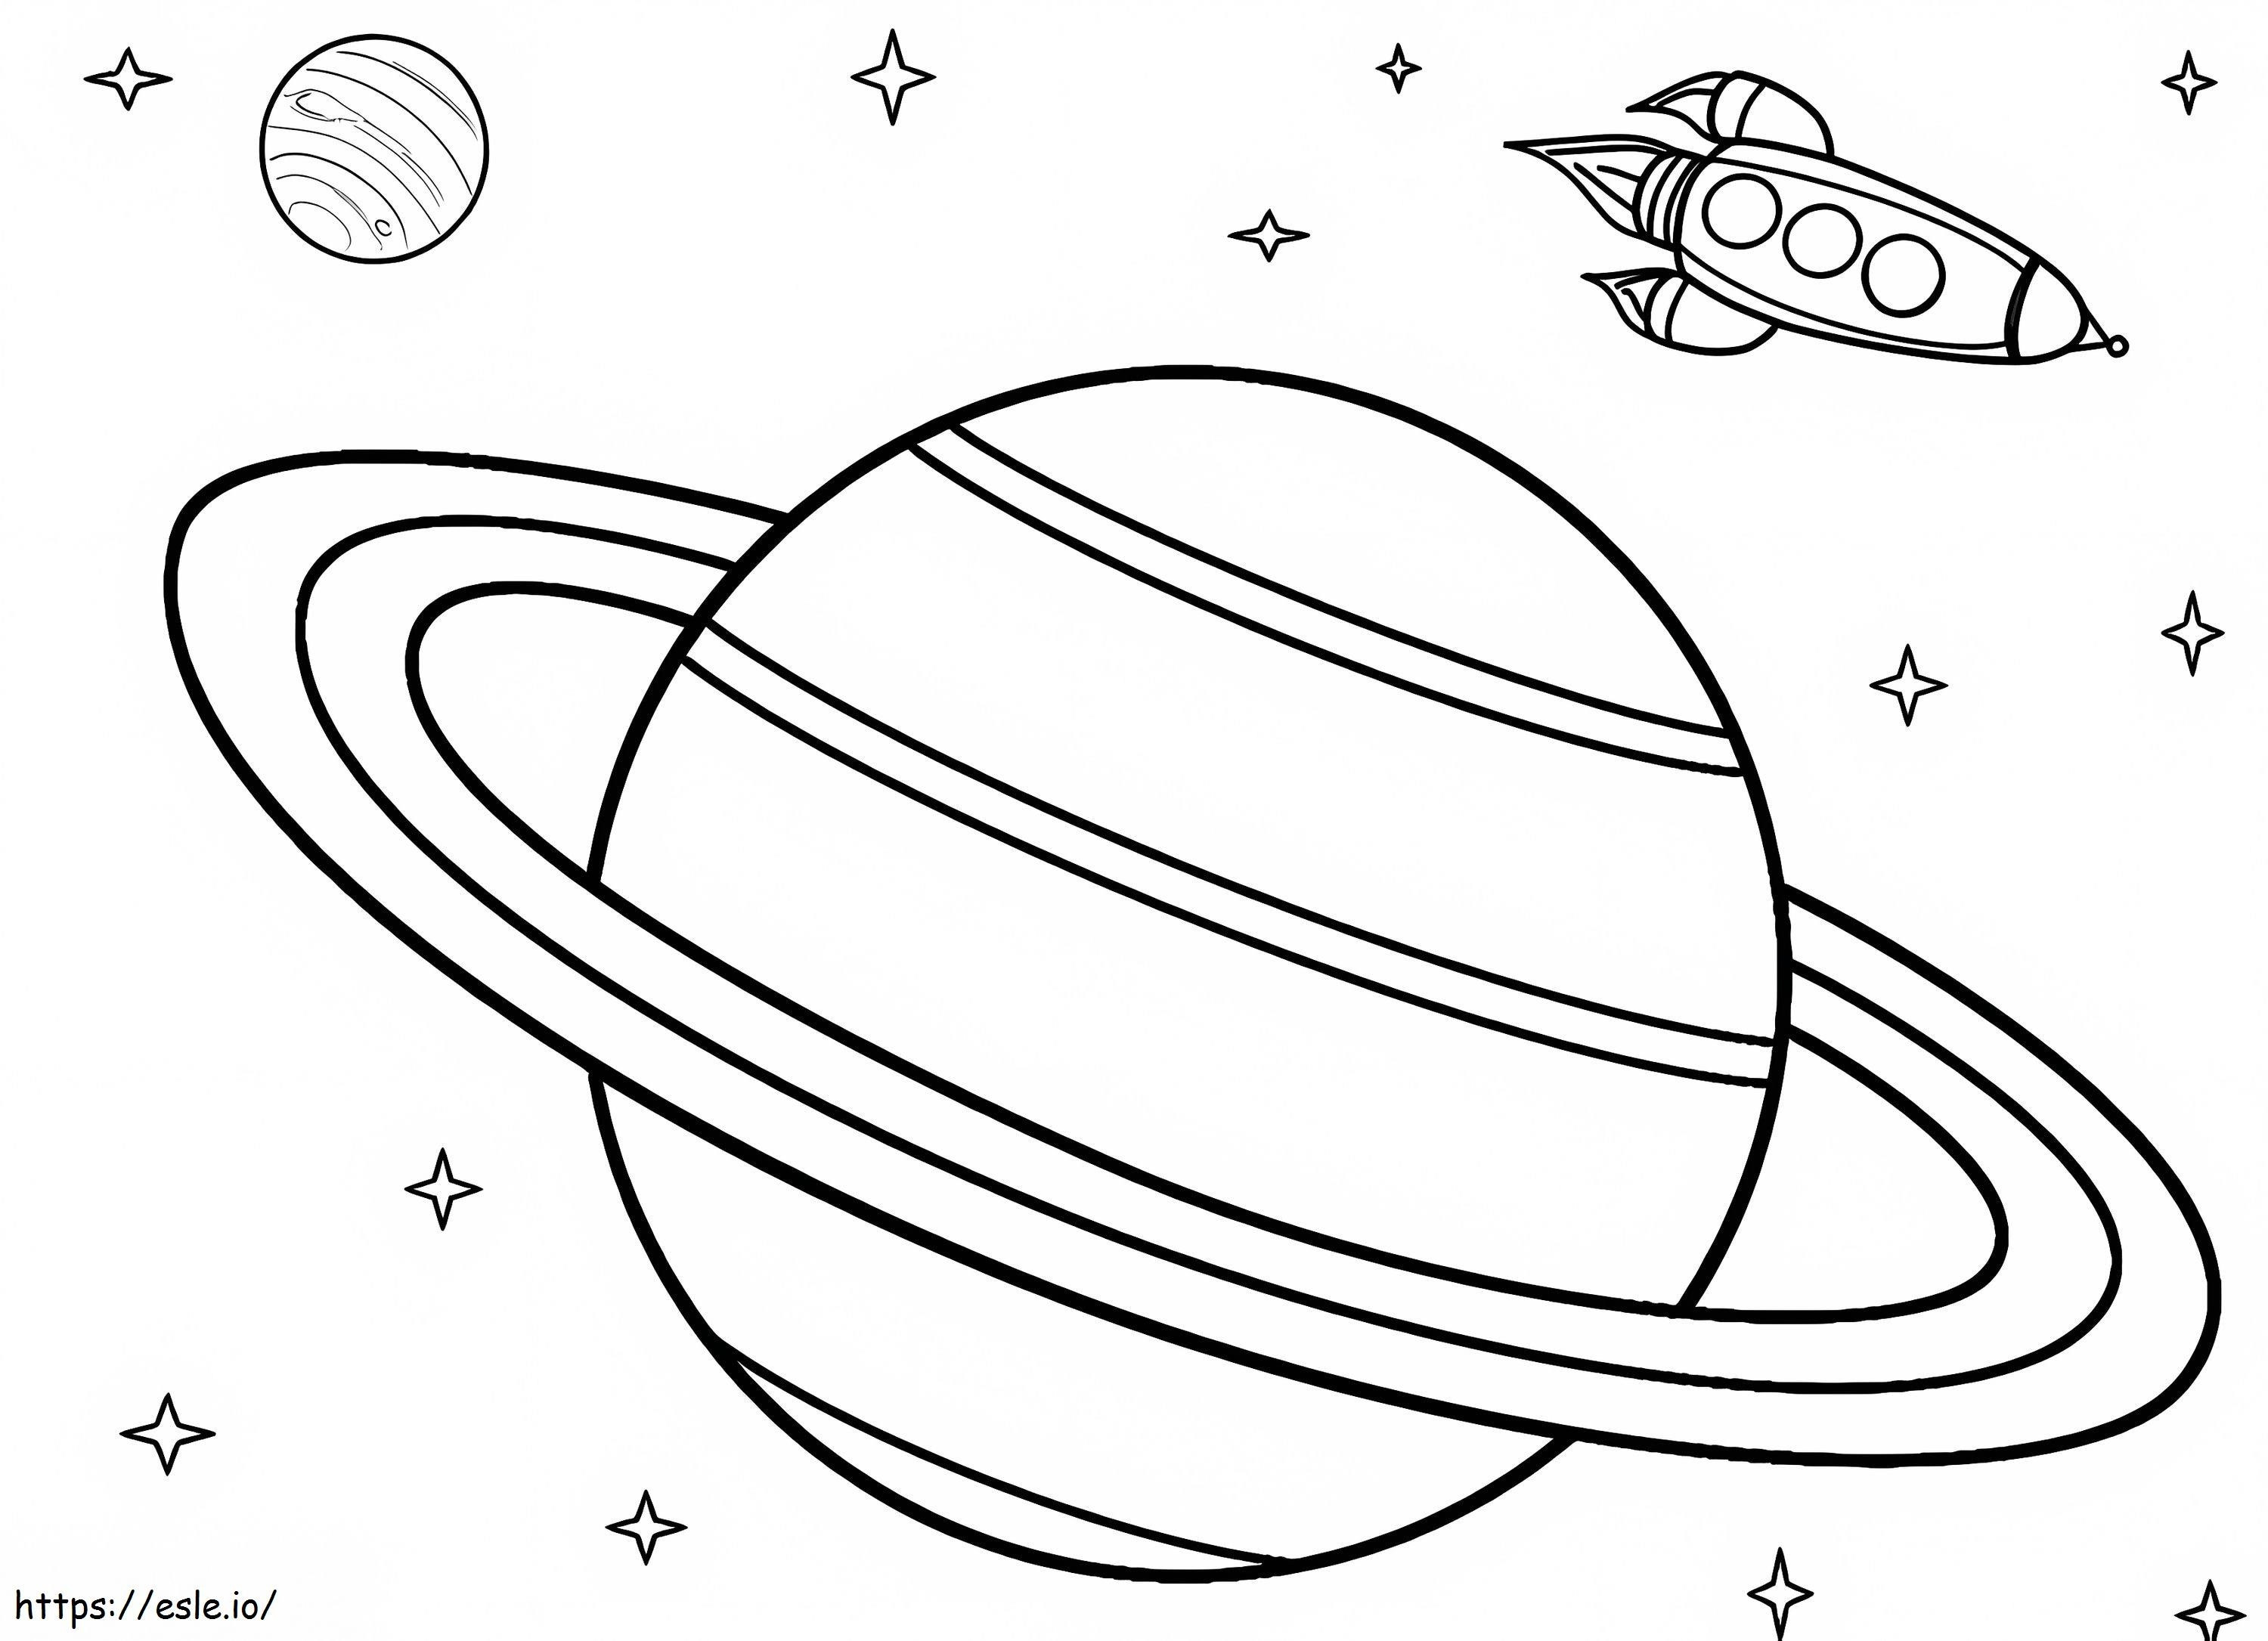 Saturno e l'astronave da colorare